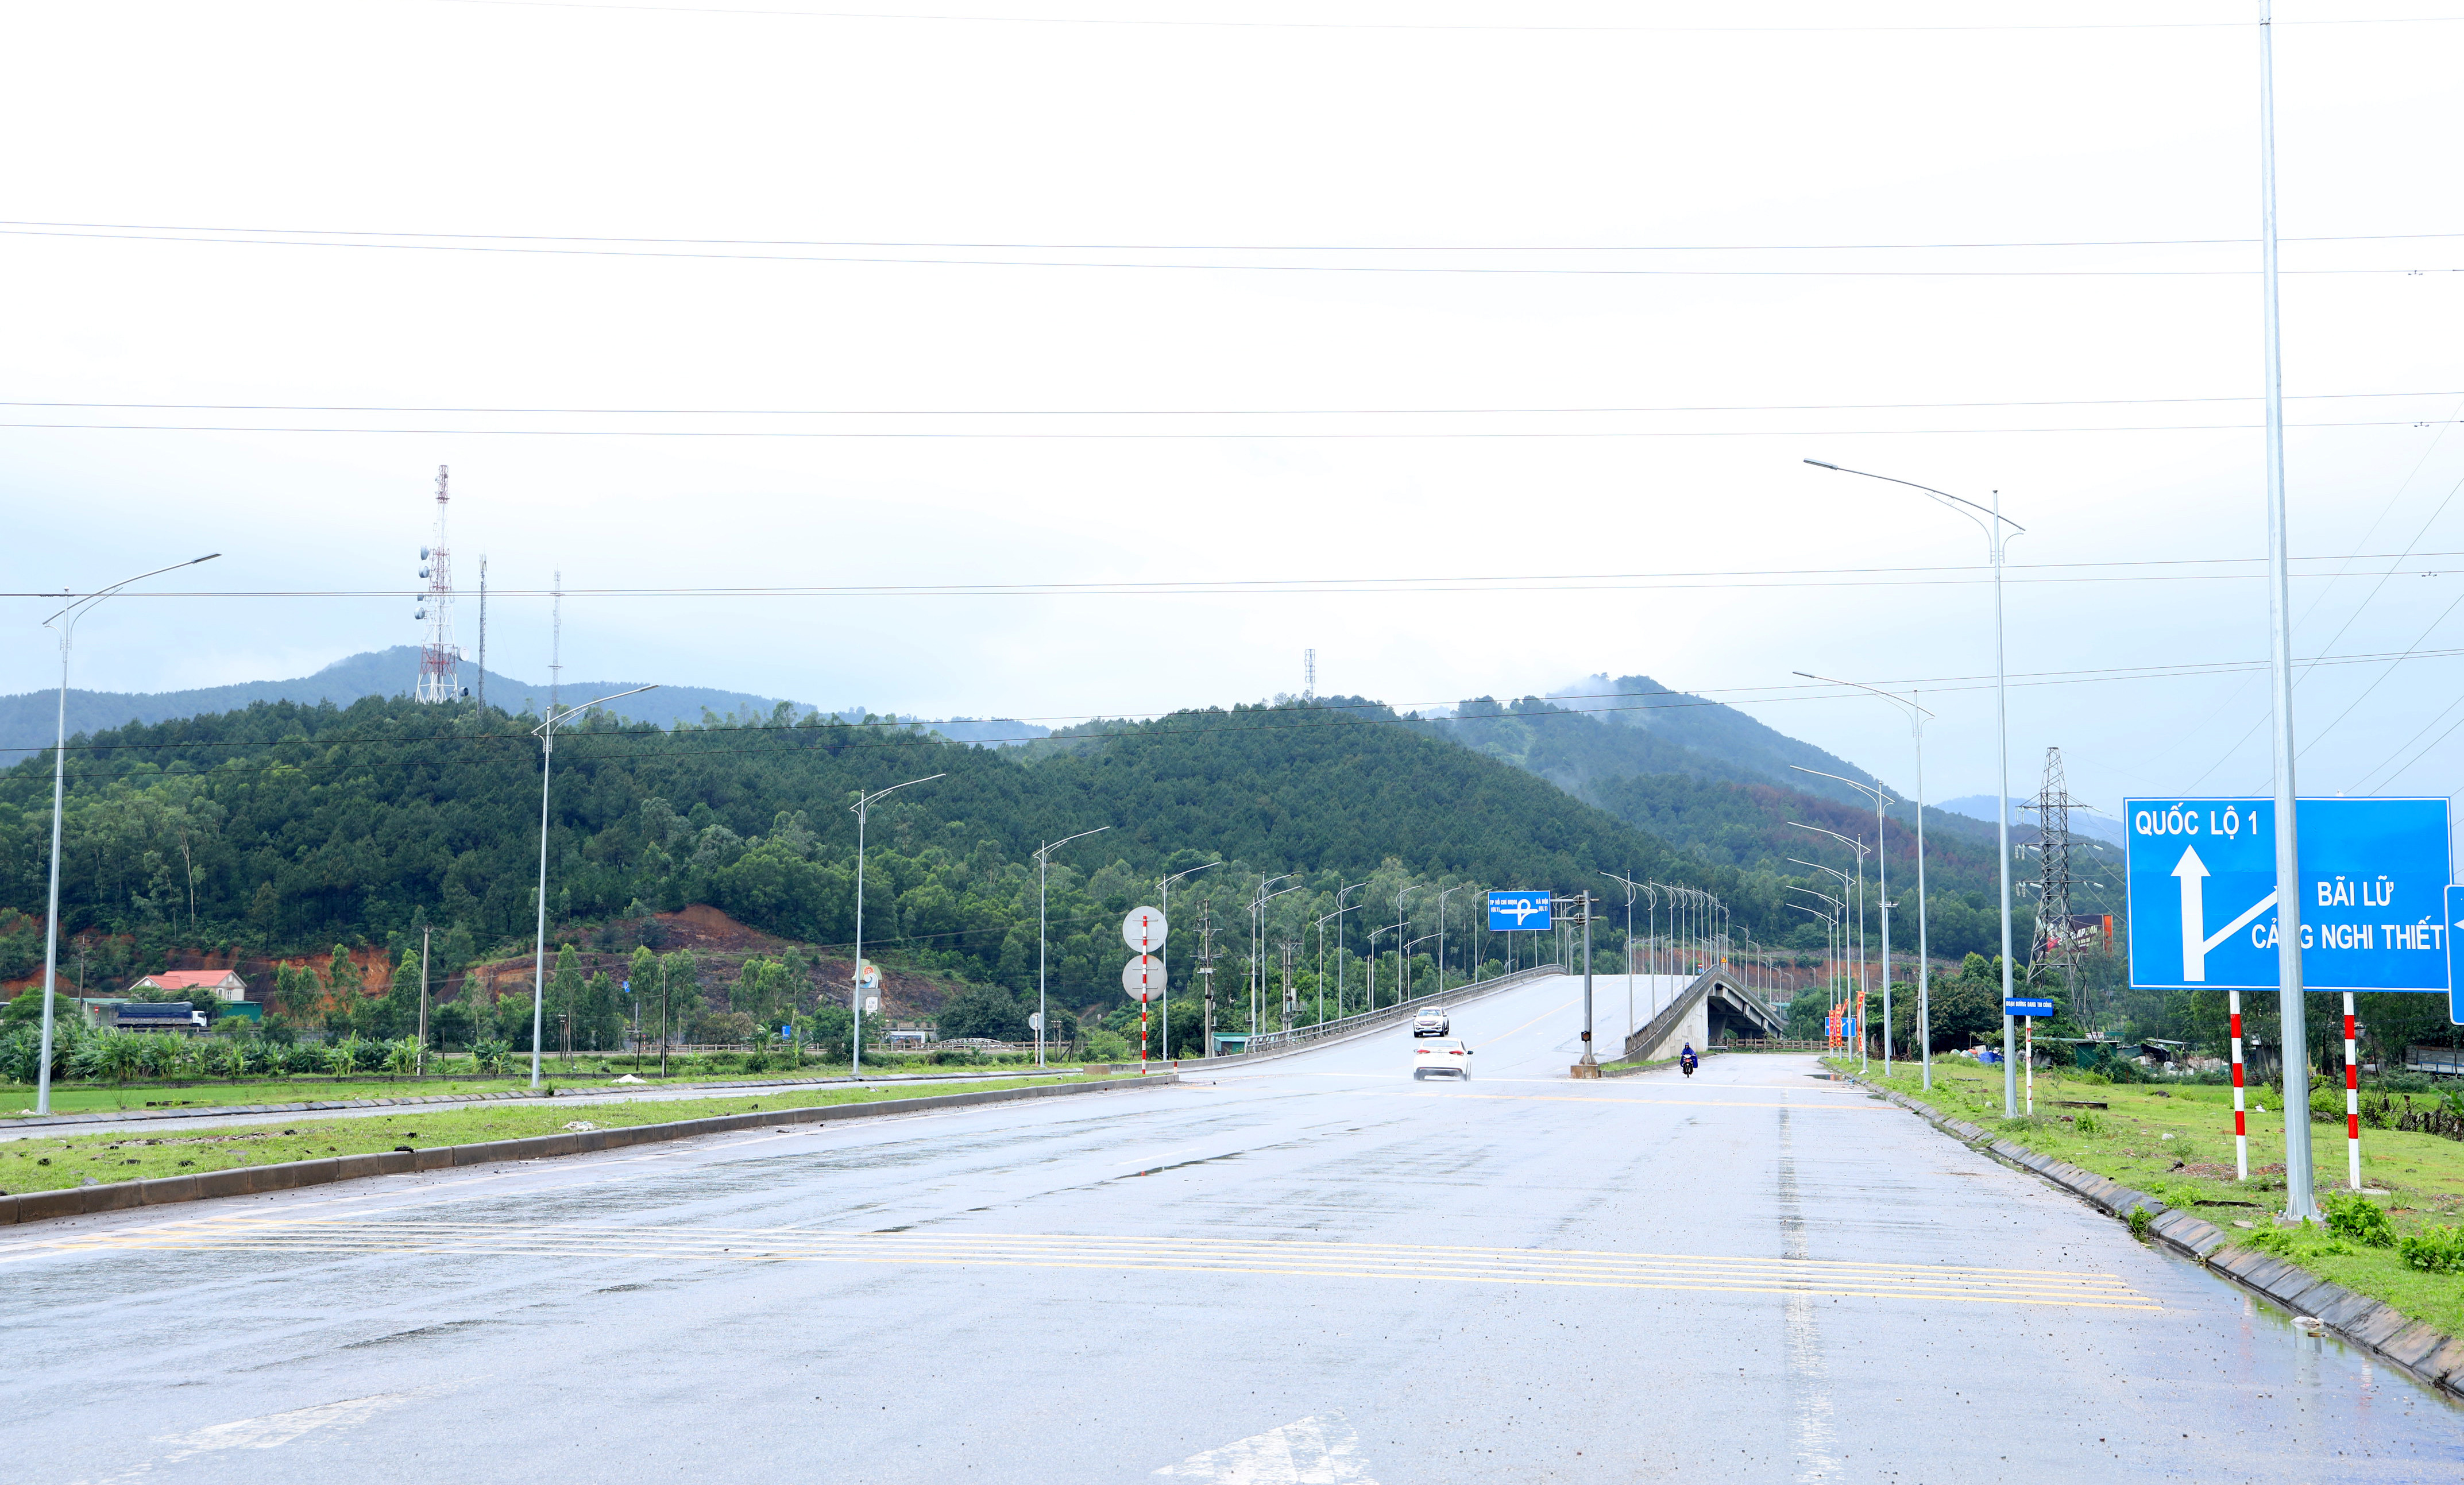 Đoạn đầu đường D4, nơi cầu vượt nối Quốc lộ 1A. Tuyến đường D4 dài hơn 7km qua các xã Nghi Yên, Nghi Tiến và Nghi Thiết nối QL1A dẫn vào vùng Trạm nghiền xi măng và cảng biển Nghi Thiết. Ảnh Nguyên Nguyên biển